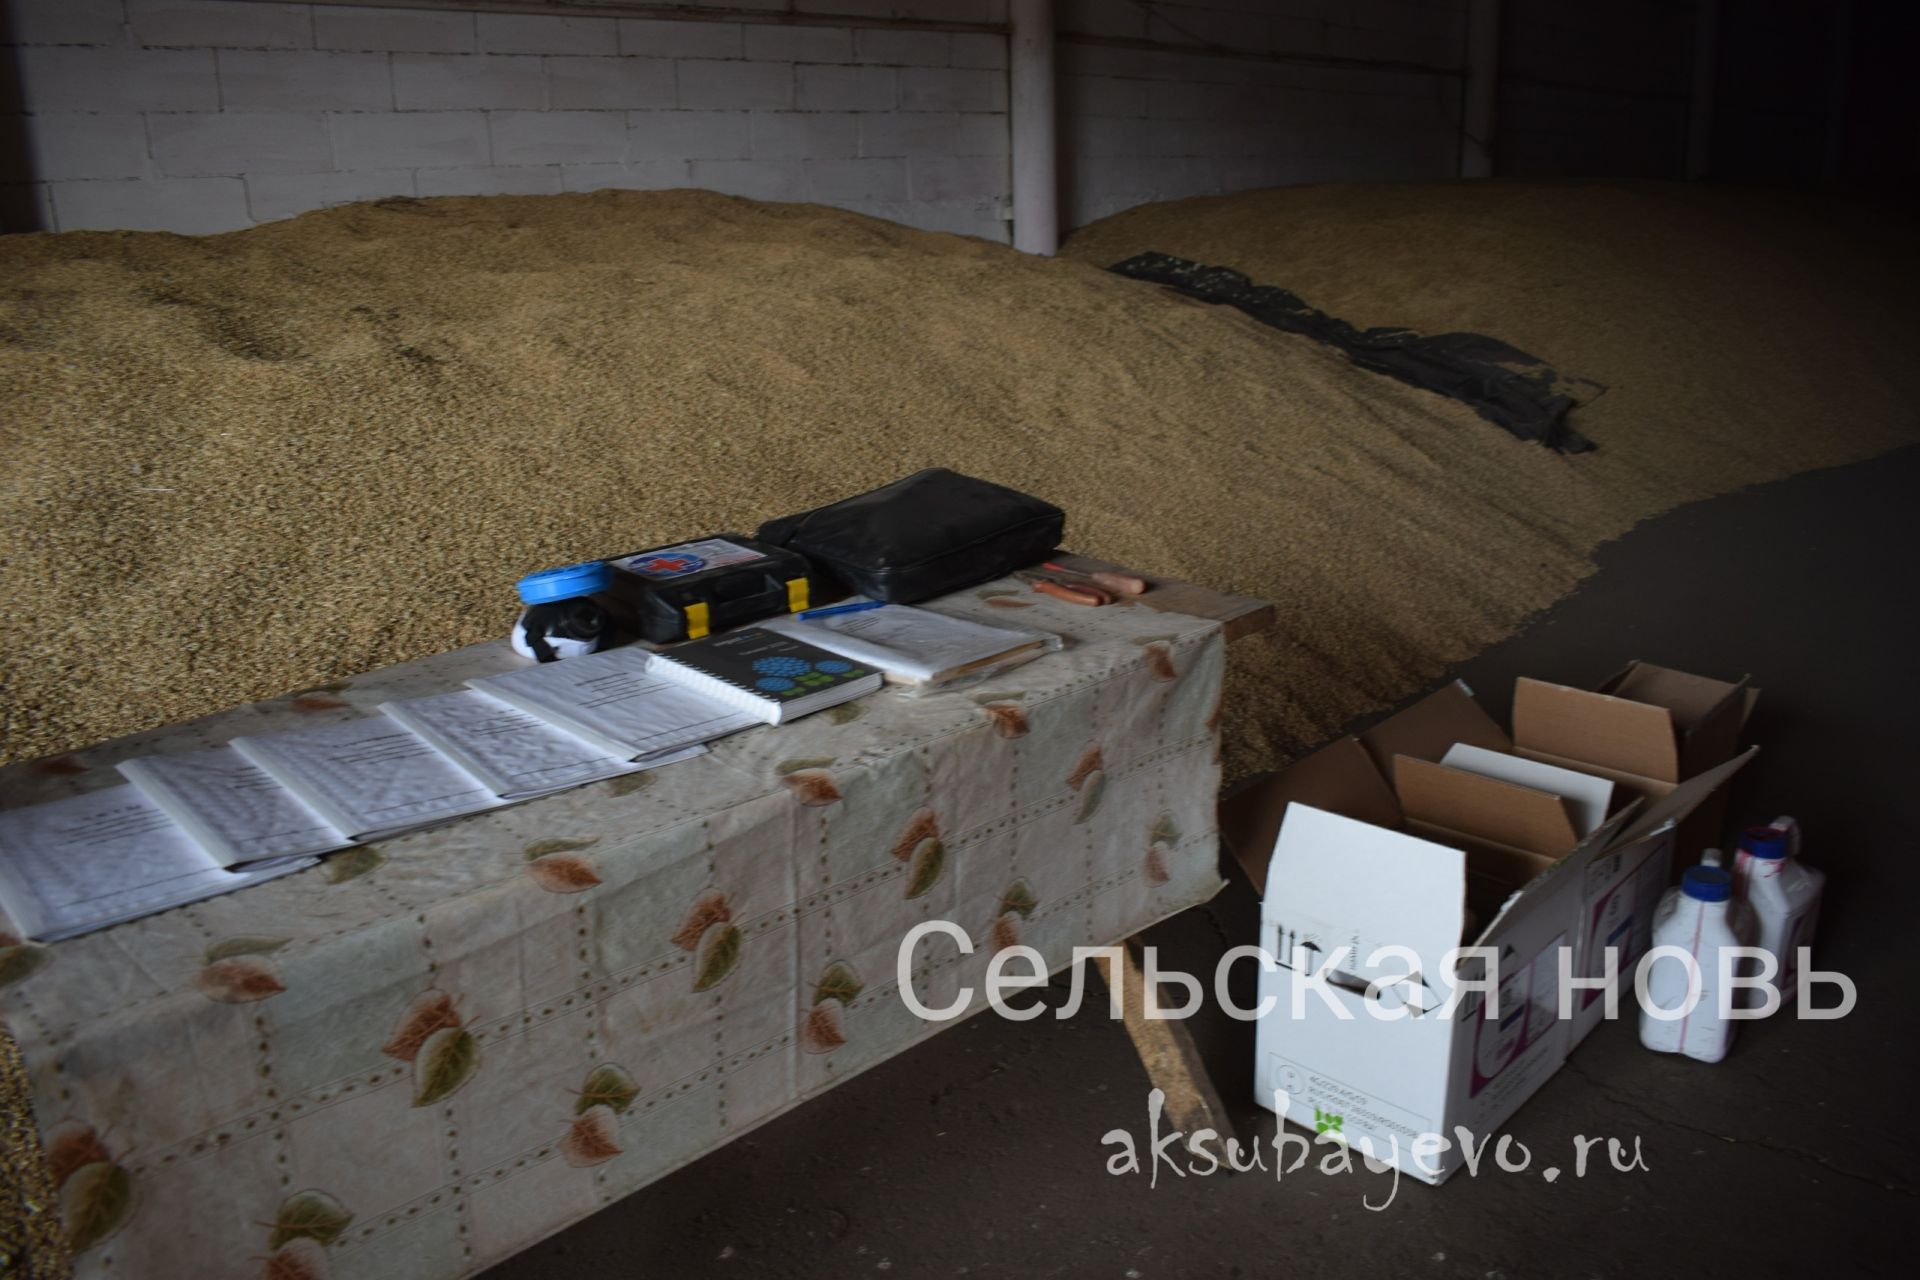 Аксубаевские земледельцы готовы приступить к посевной